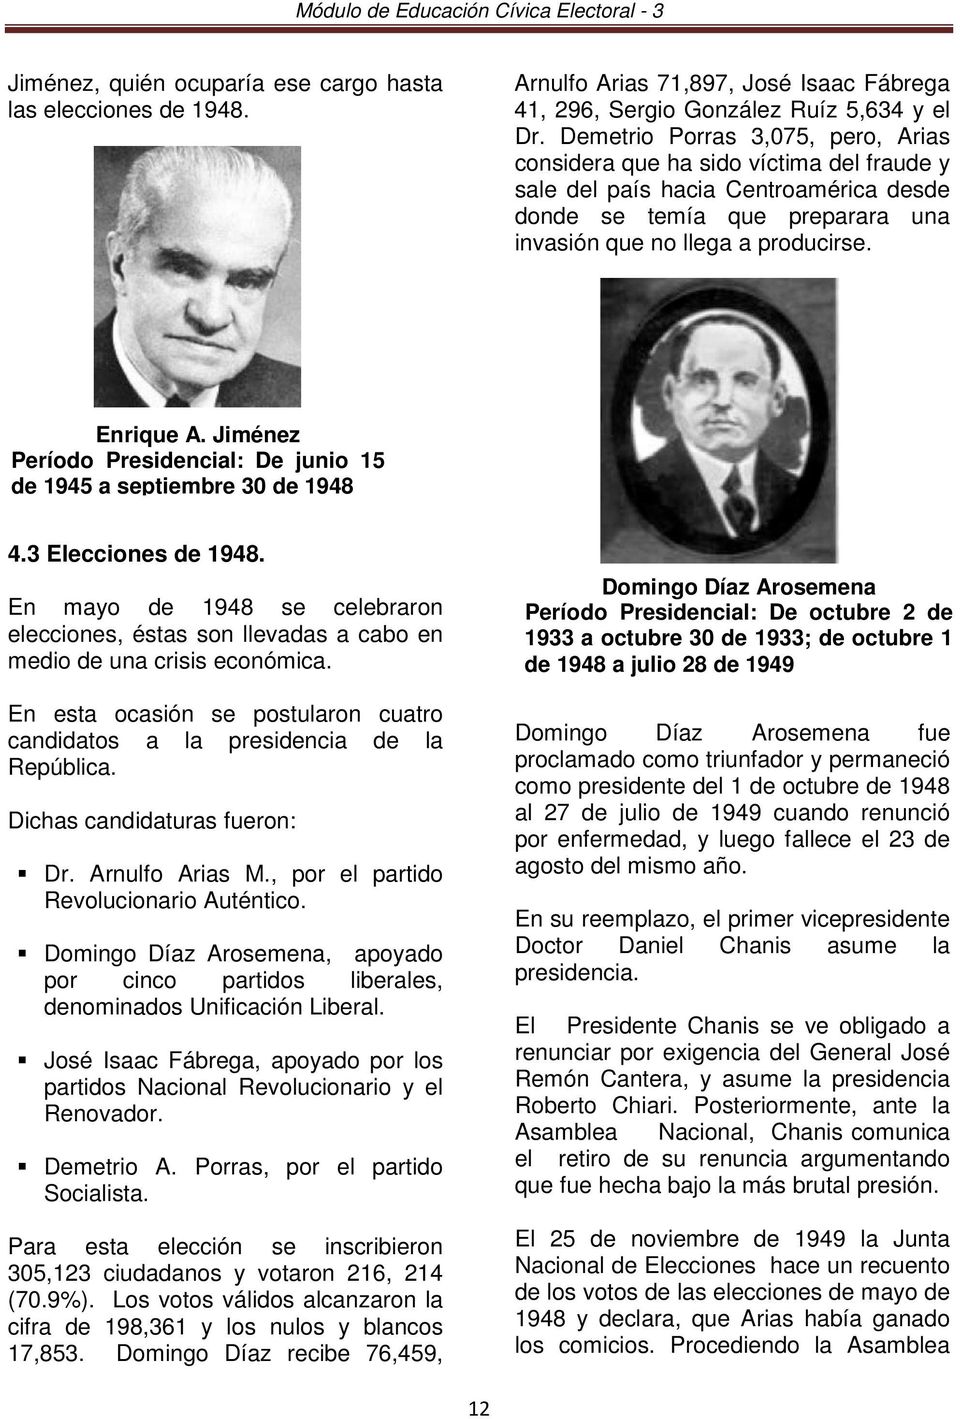 Jiménez Período Presidencial: De junio 15 de 1945 a septiembre 30 de 1948 4.3 Elecciones de 1948. En mayo de 1948 se celebraron elecciones, éstas son llevadas a cabo en medio de una crisis económica.